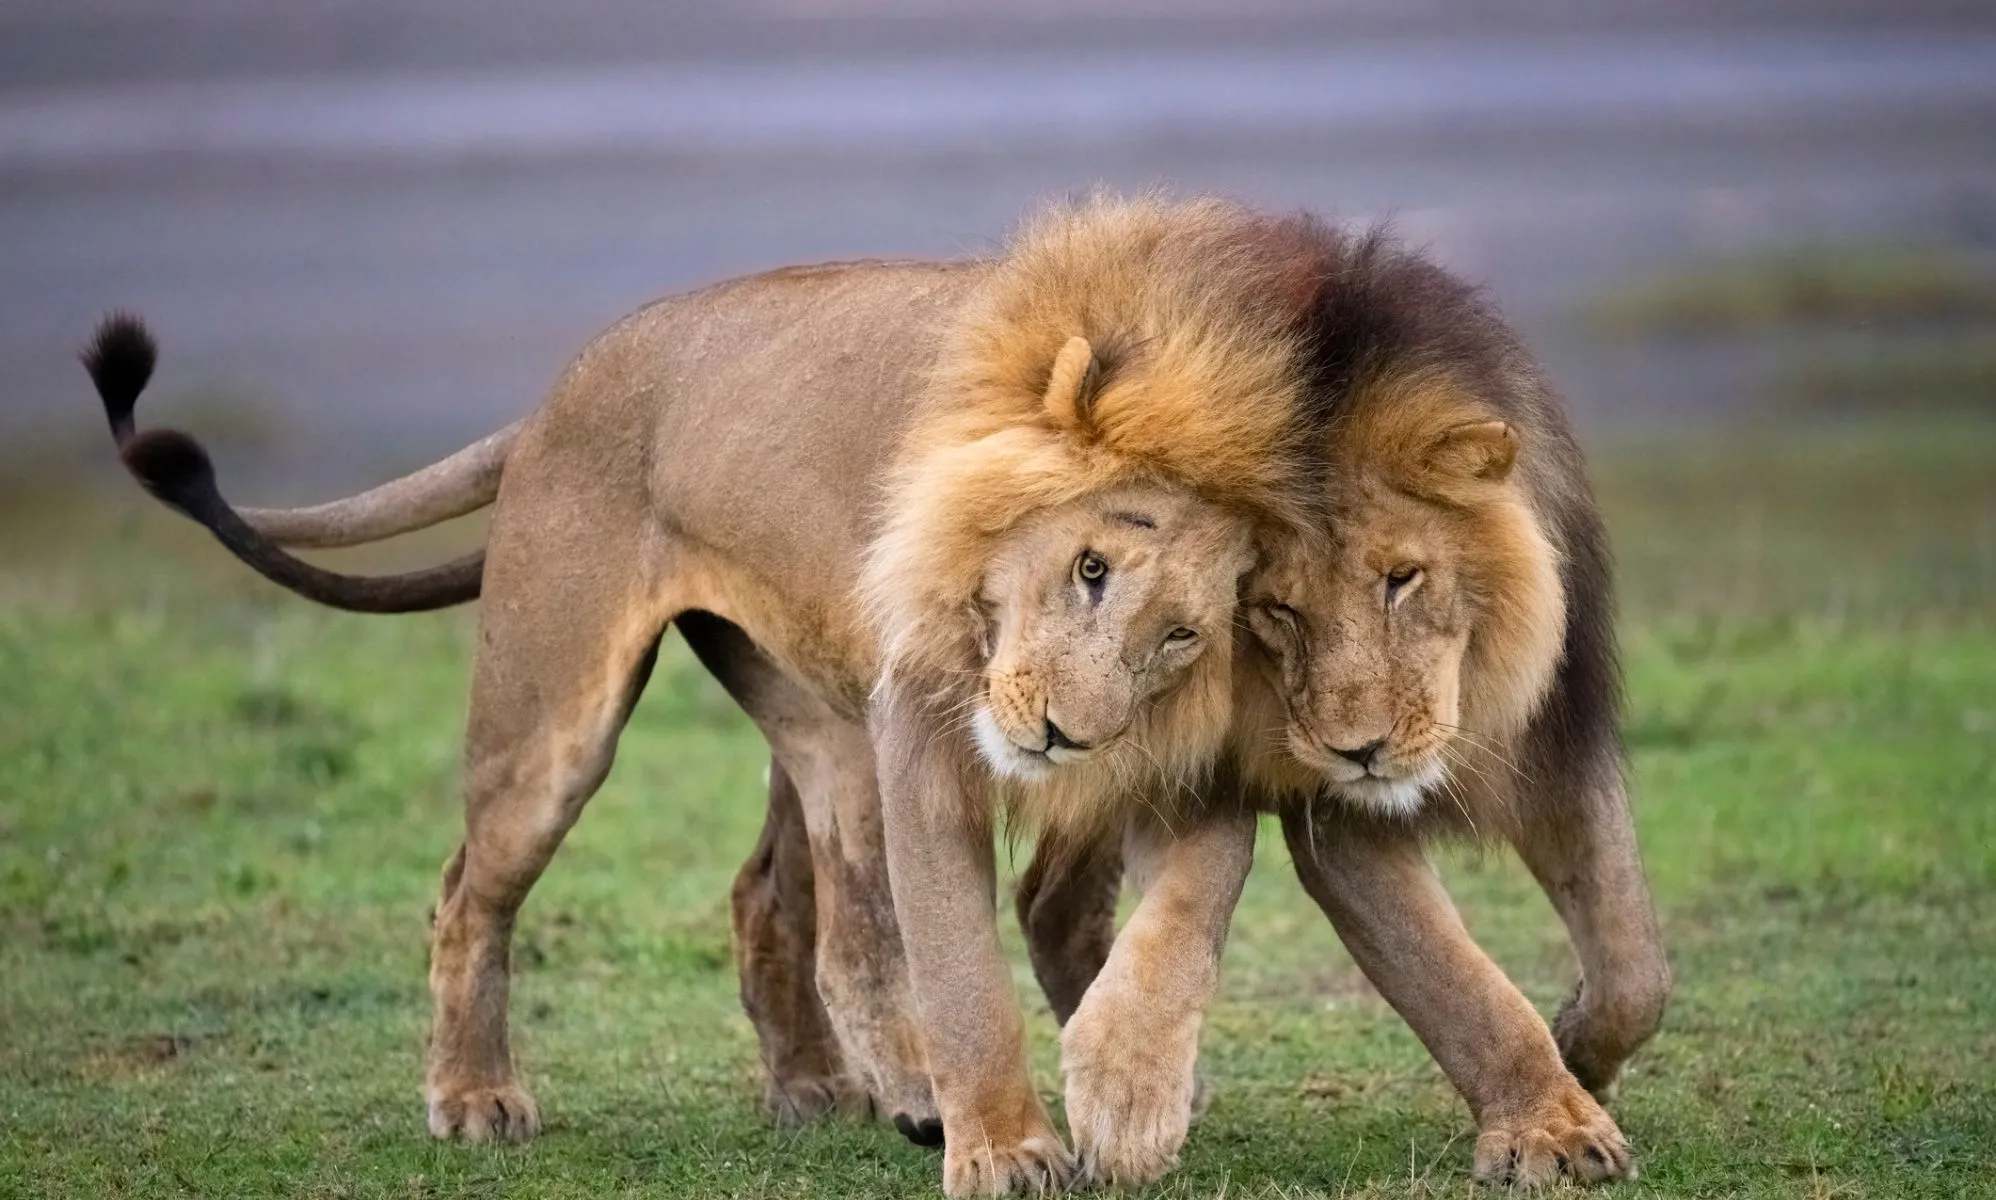 Acusan a un documental sobre leones bisexuales de promover una "agenda gay satánica".